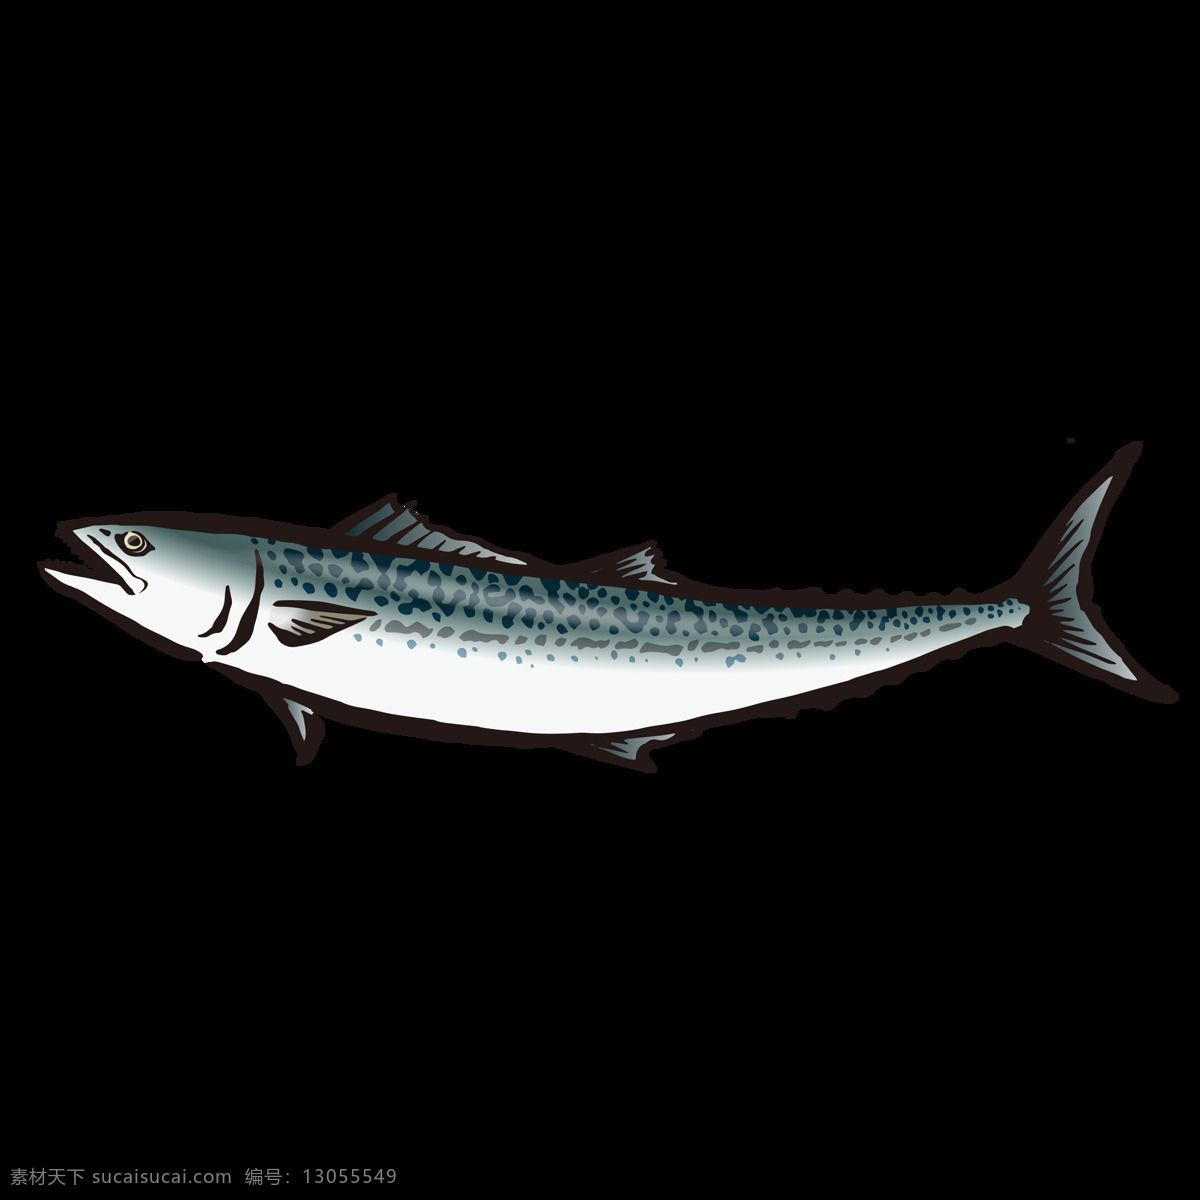 金枪鱼 水彩 绘画 海鱼 鱼类 海产 图案 鱼 海鲜 海洋生物 水产 食物 手绘 颜料 小清新 包装图案 卡通 生物世界